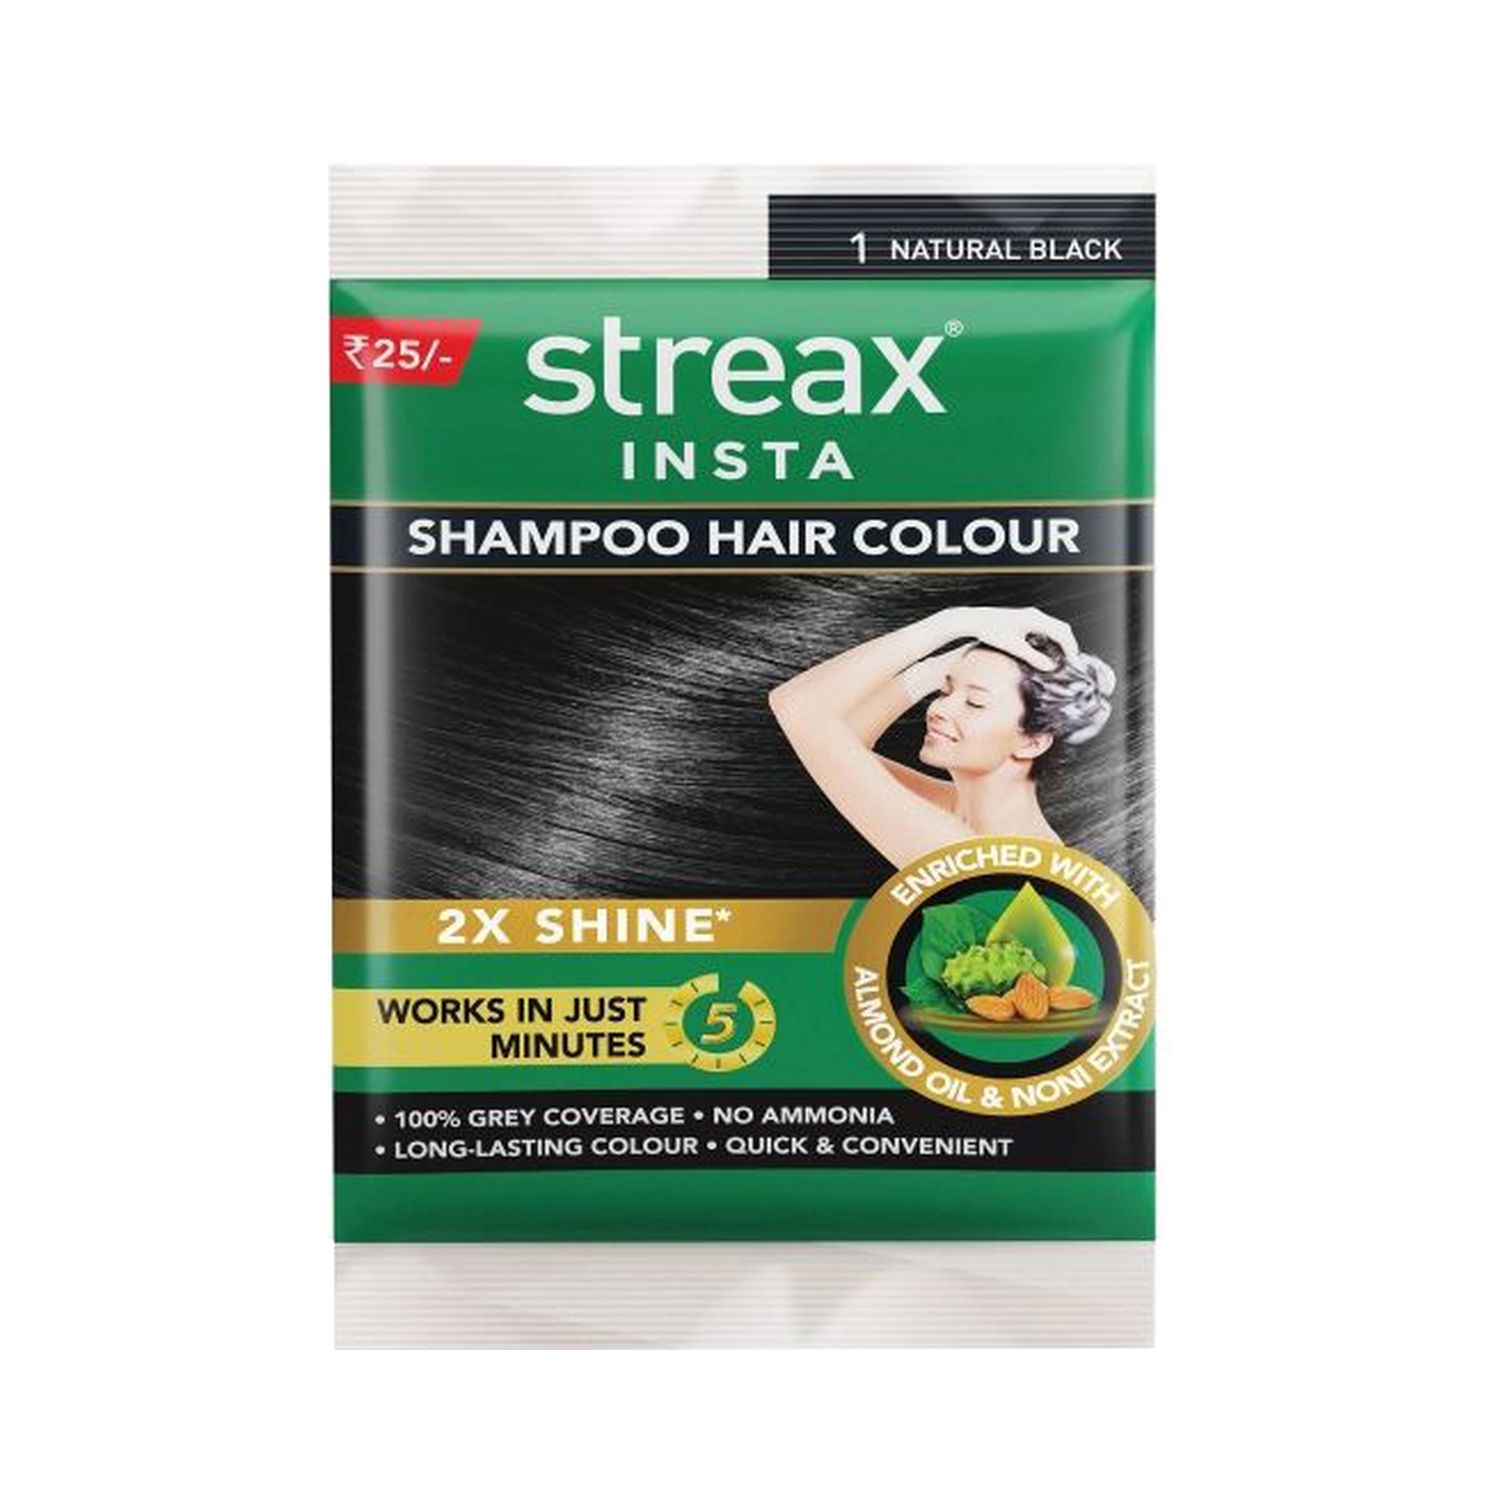 Streax | Streax Insta Shampoo Hair Colour - 1 Natural Black (18ml)